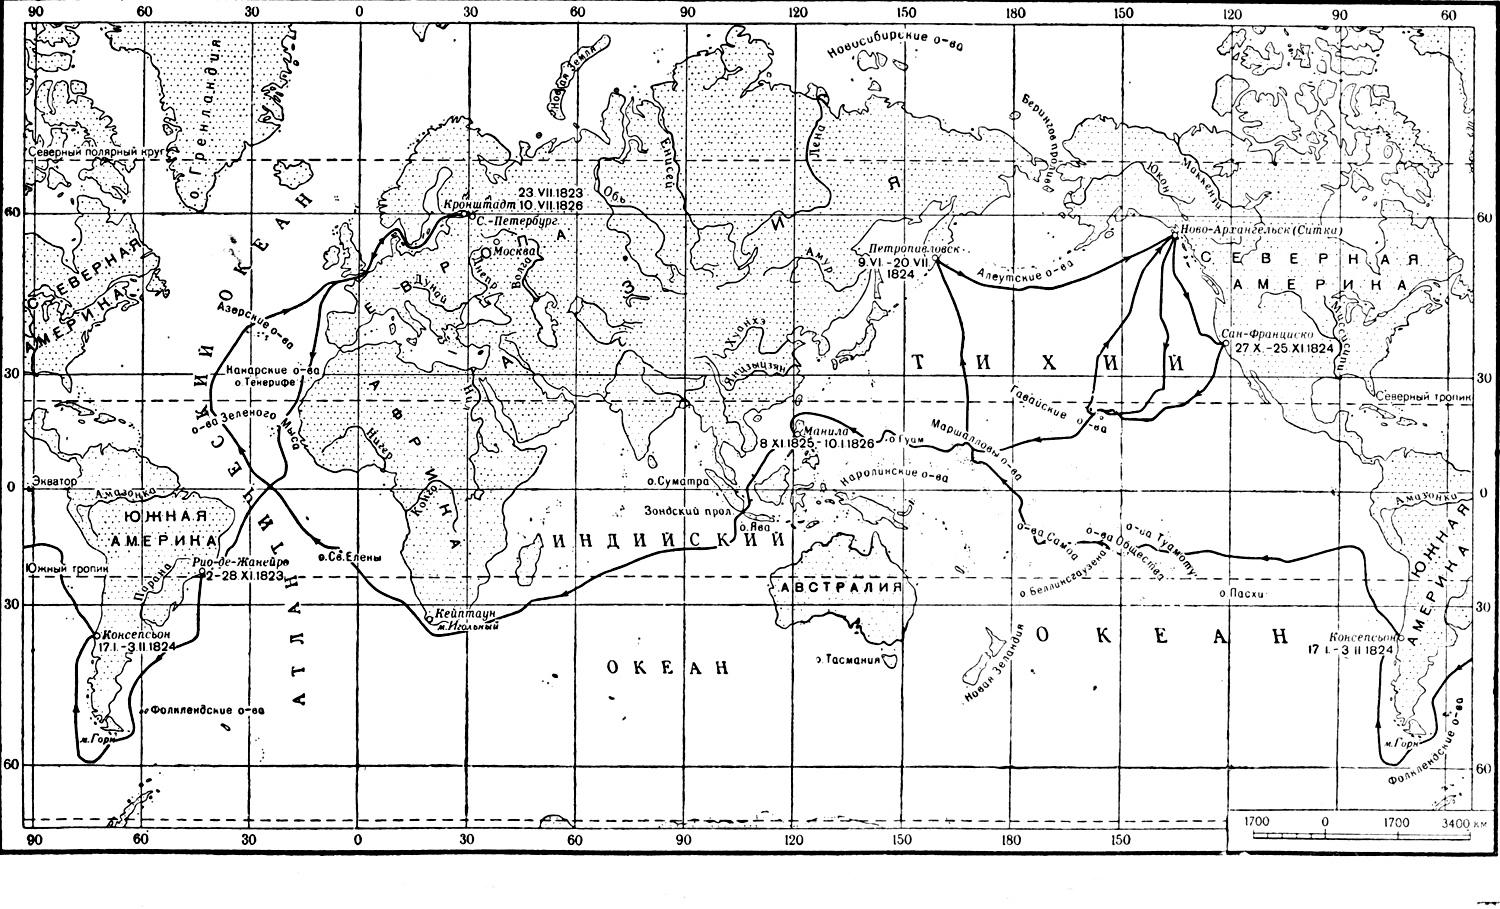 Карта кругосветного путешествия. Кругосветное плавание Головнин карта. Кругосветное плавание Лазарева м п 1813-1816.